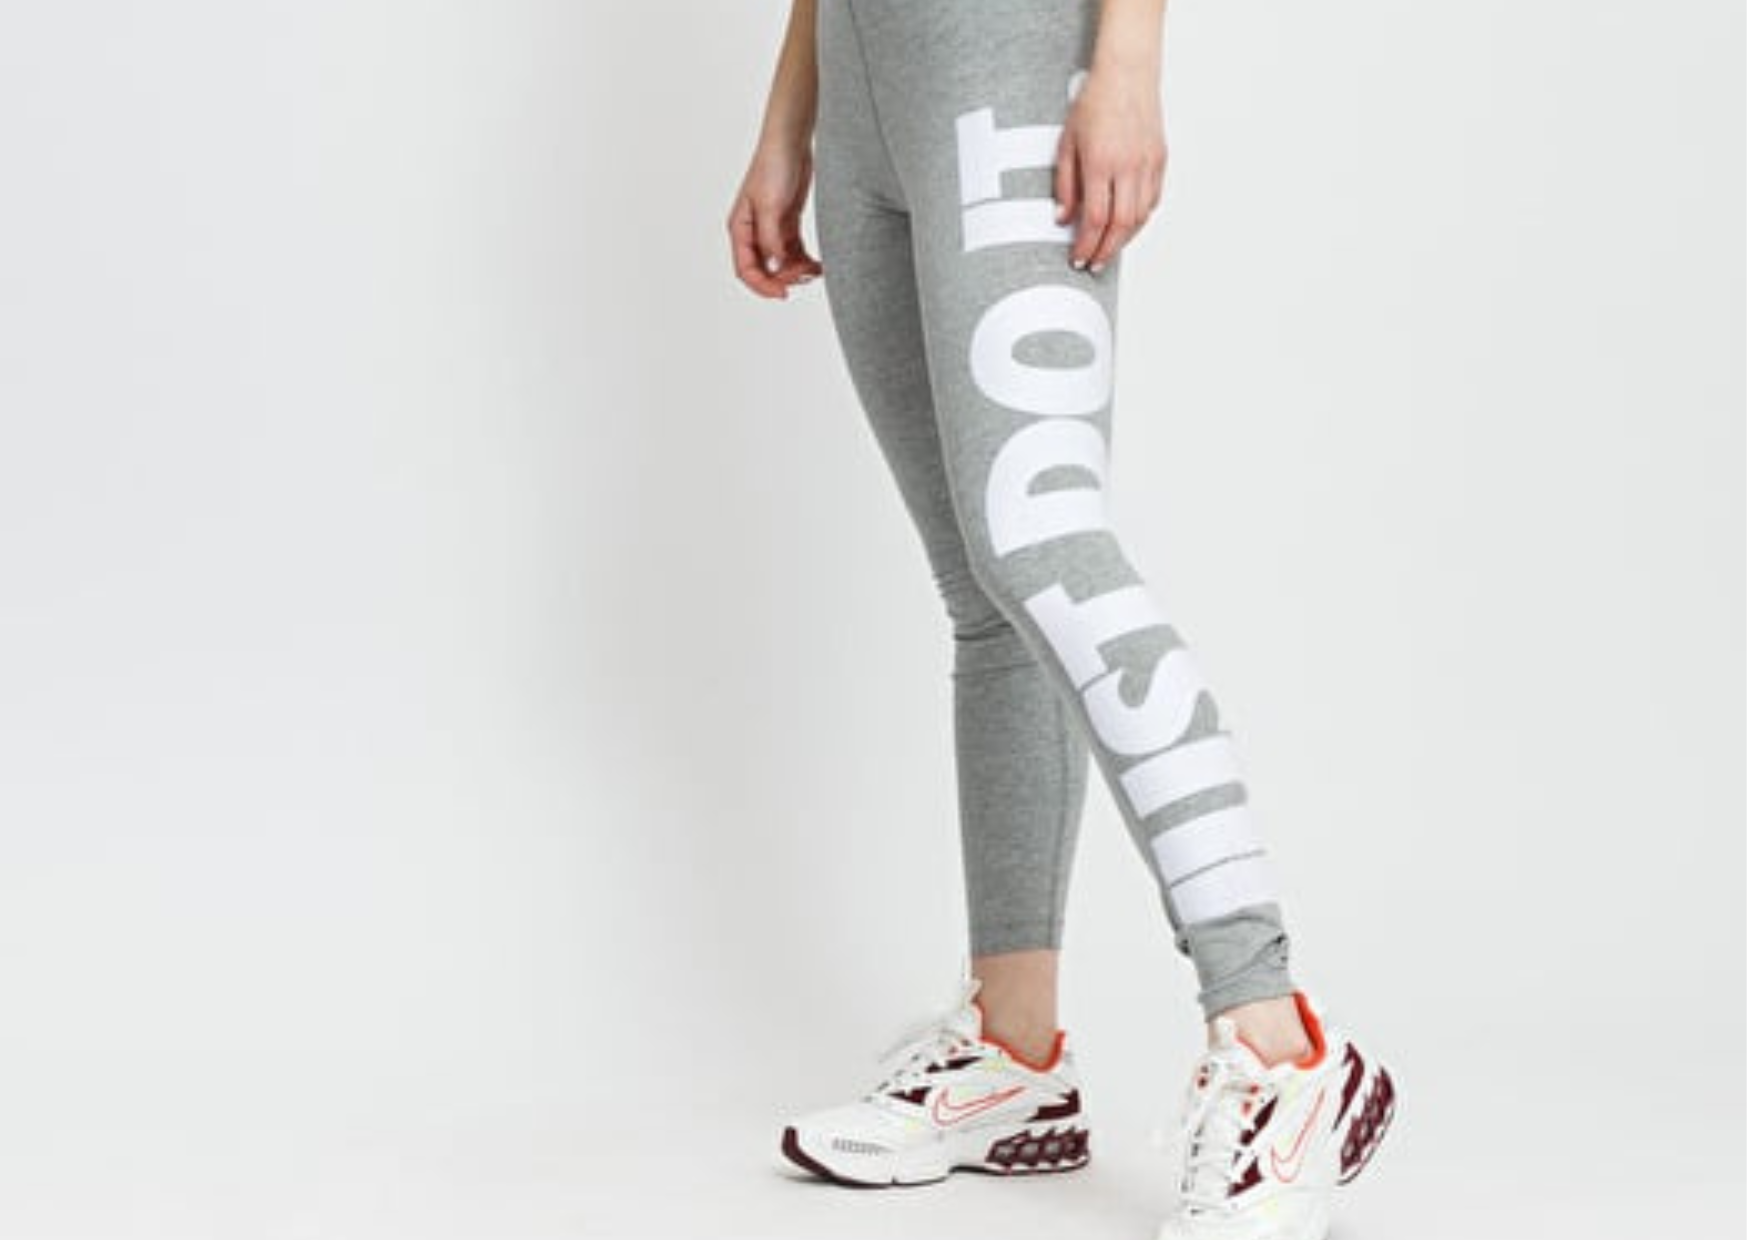 Szare Legginsy Nike "Just do it!": Moda, Styl i Zastosowanie